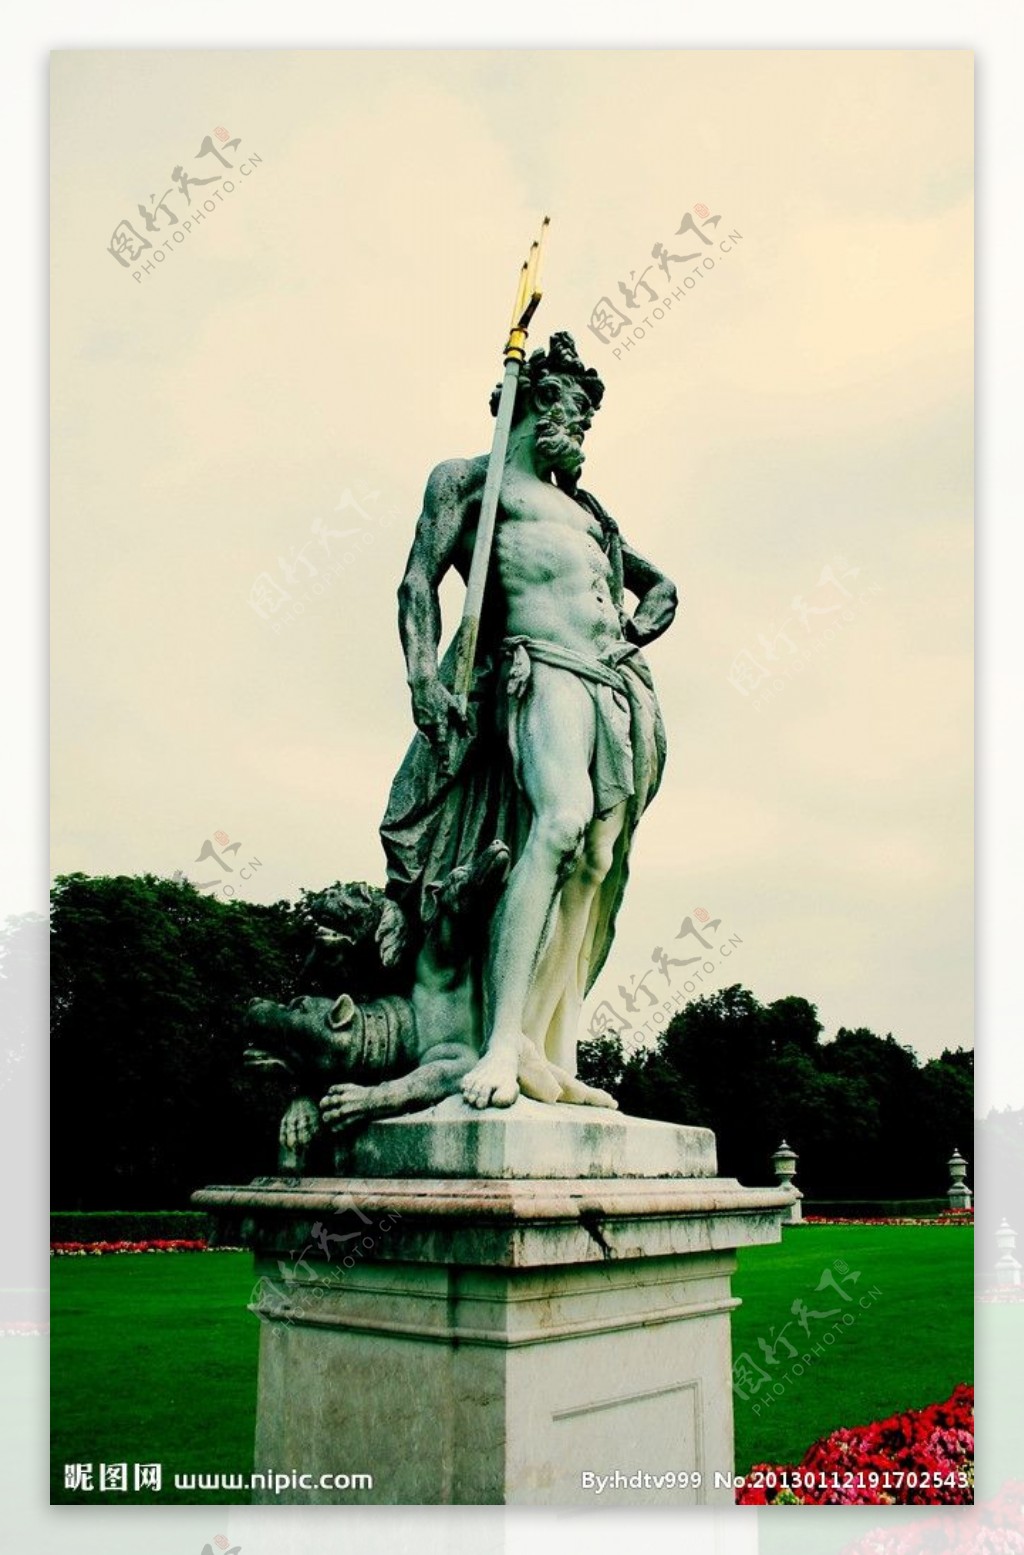 慕尼黑王宫雕塑图片